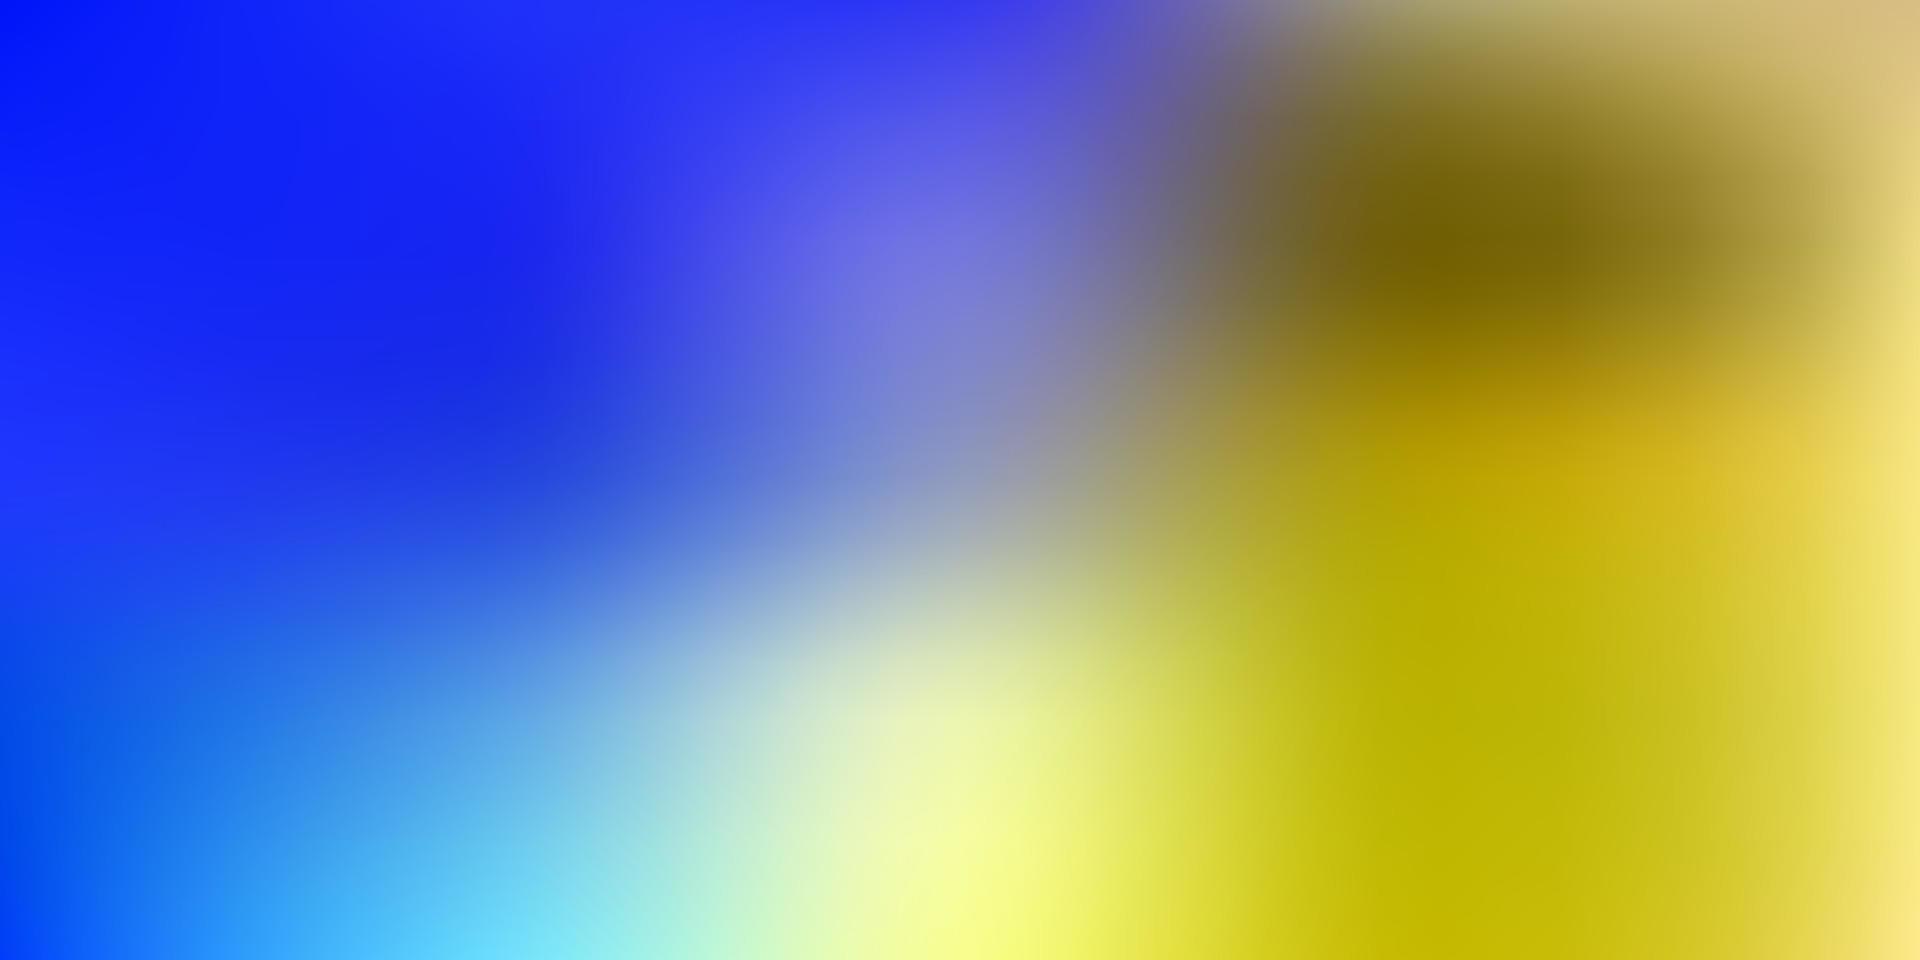 textura turva vector azul e amarelo claro